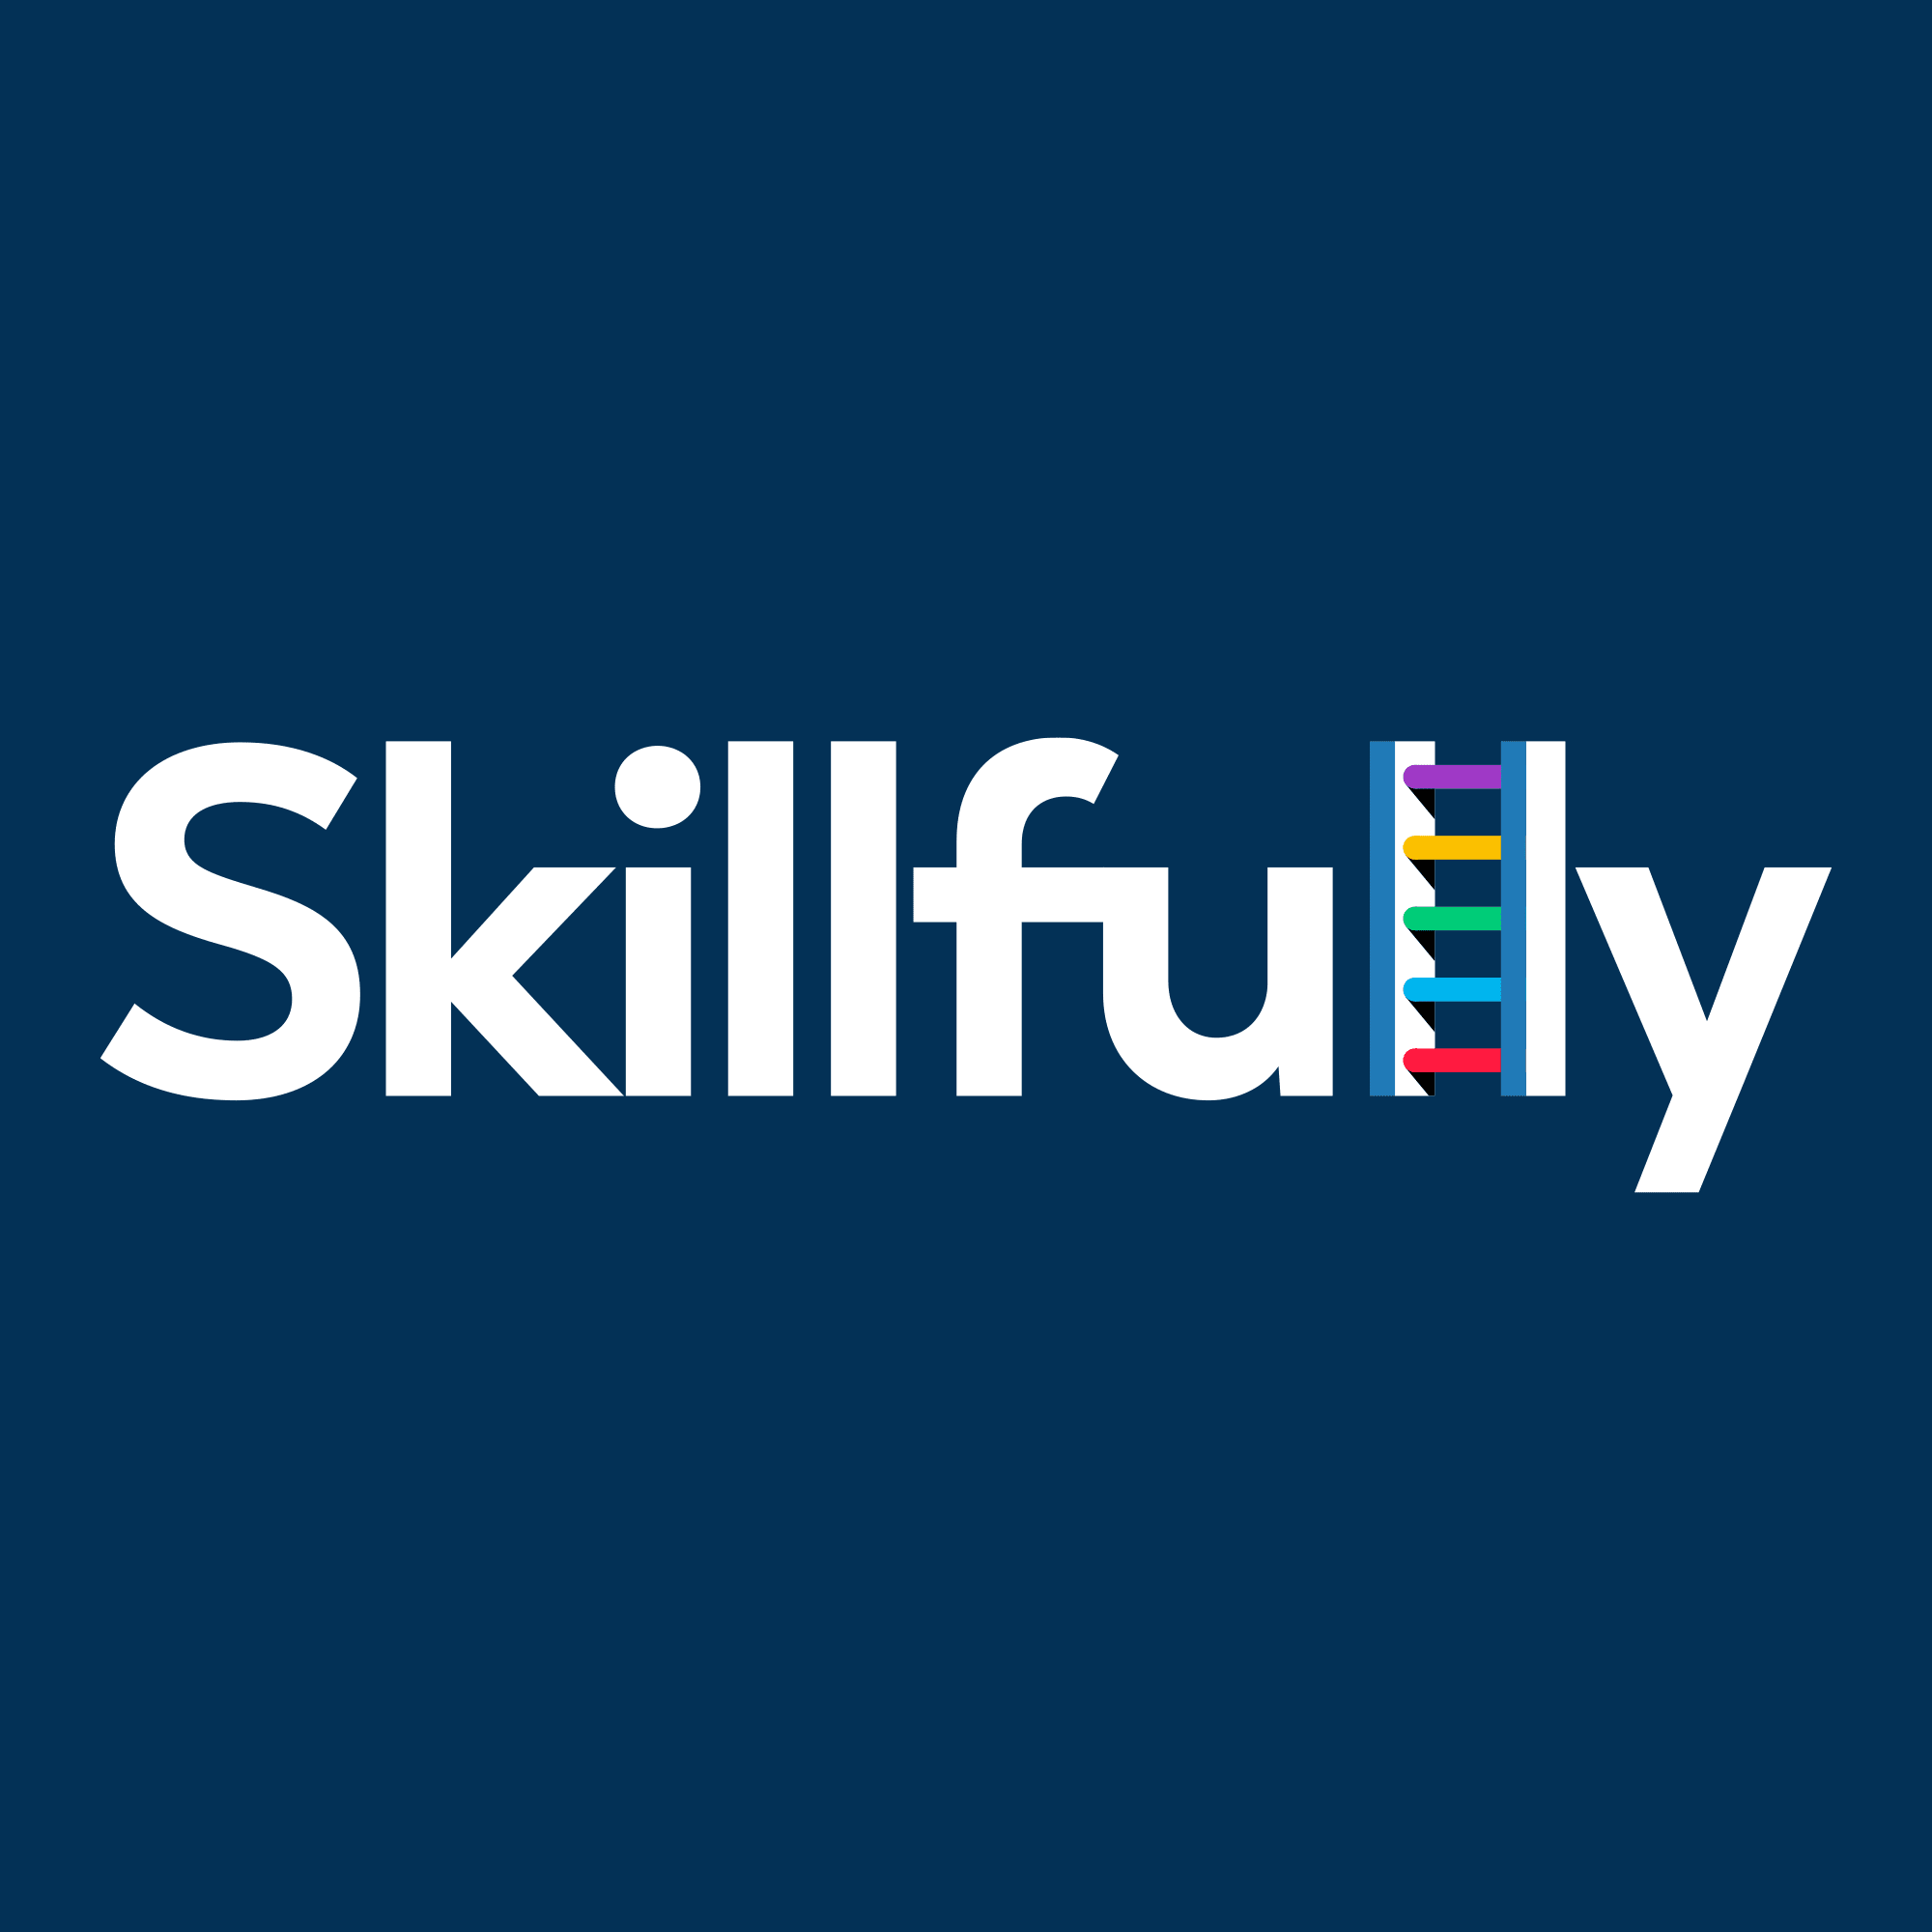 Skillful.ly logo